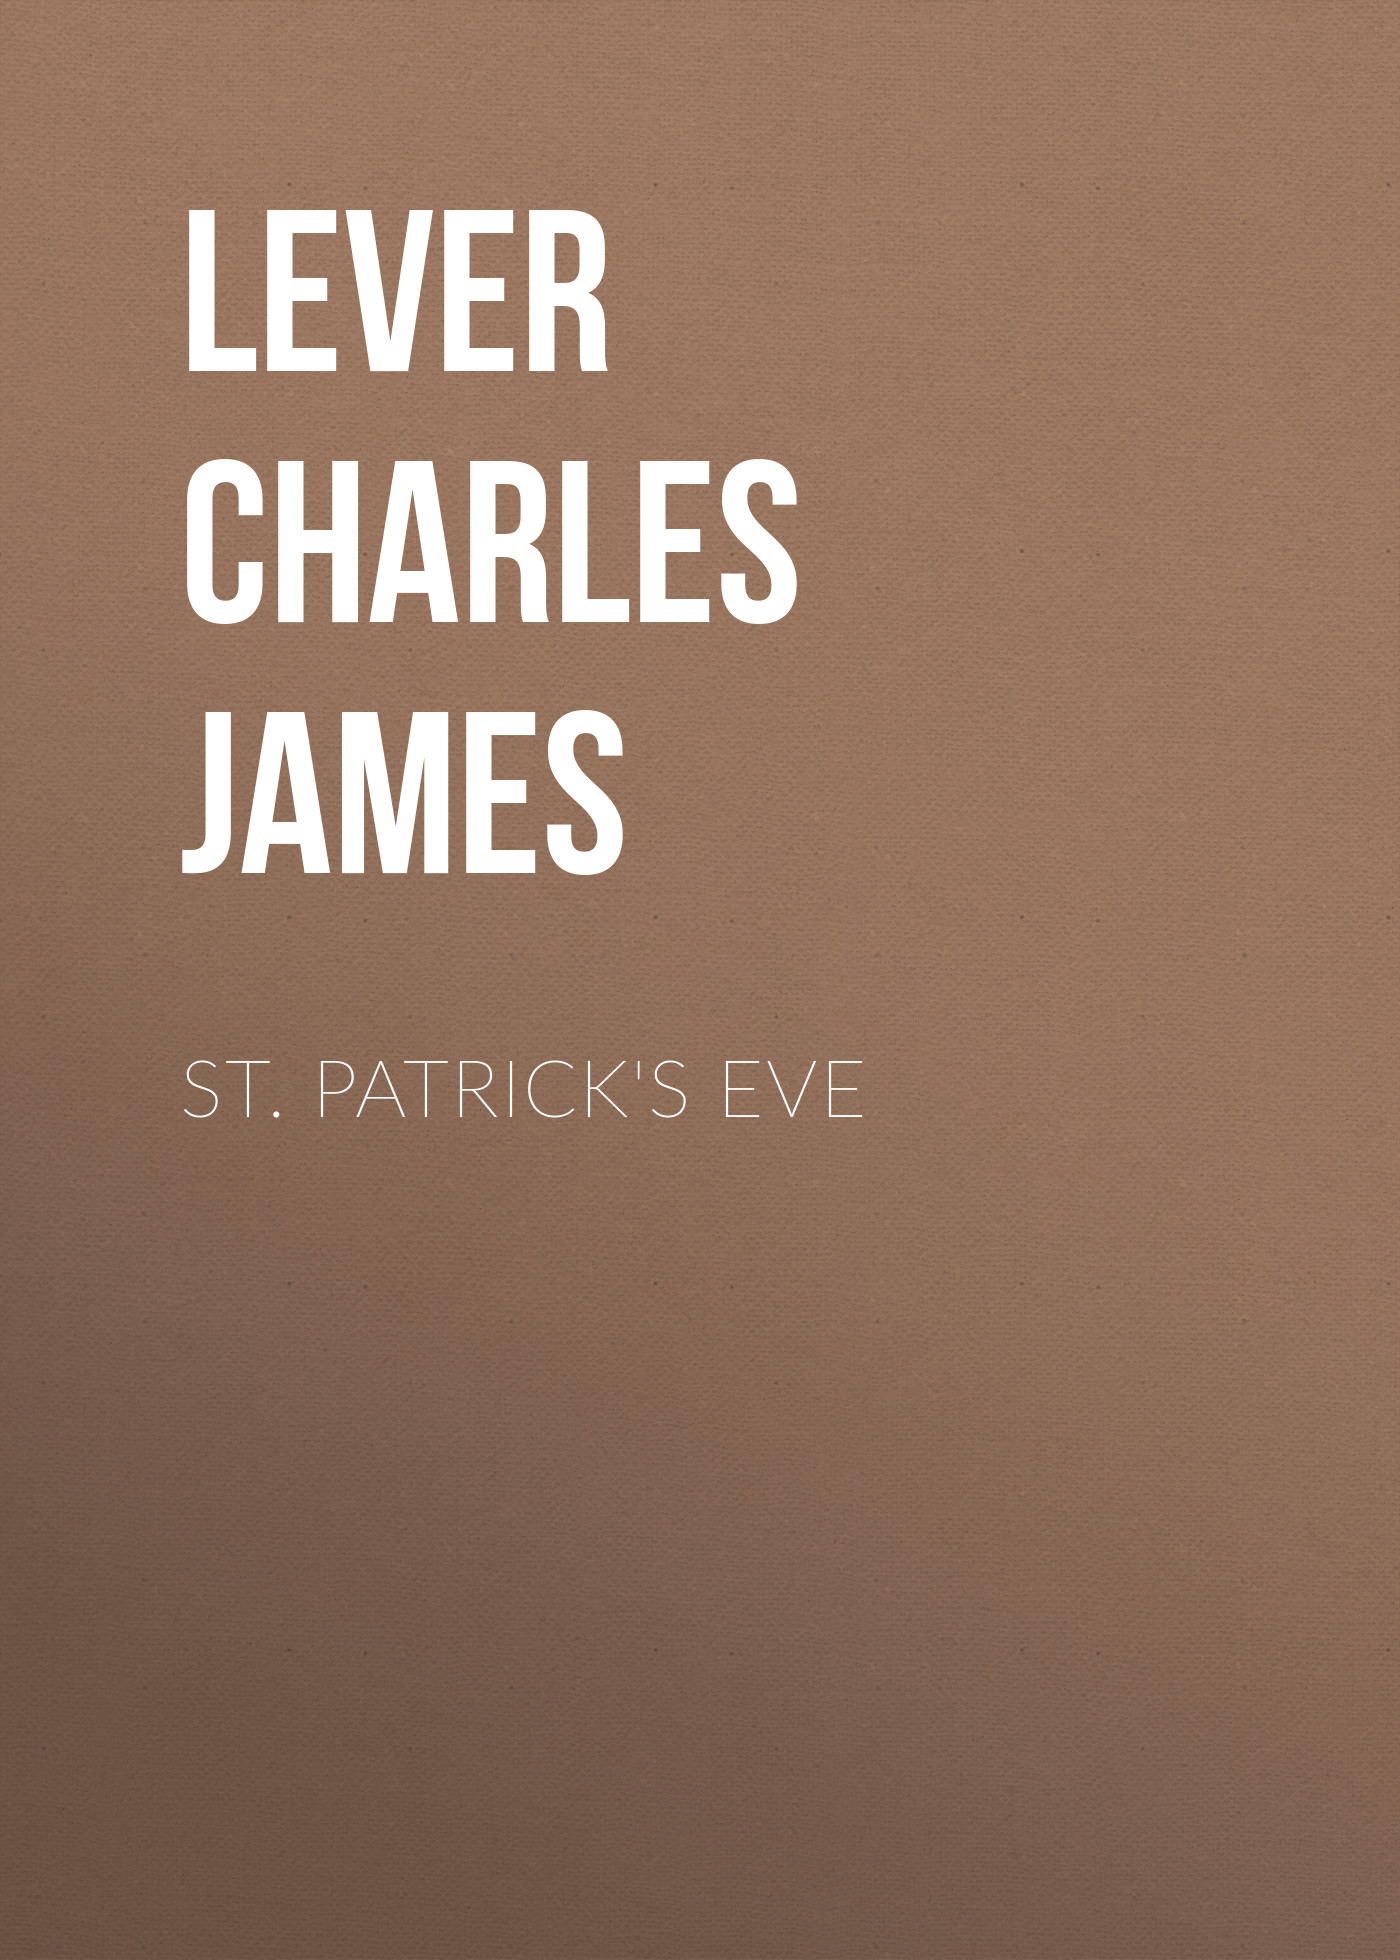 Книга St. Patrick's Eve из серии , созданная Charles Lever, может относится к жанру Литература 19 века, Зарубежная старинная литература, Зарубежная классика. Стоимость электронной книги St. Patrick's Eve с идентификатором 25449340 составляет 0 руб.